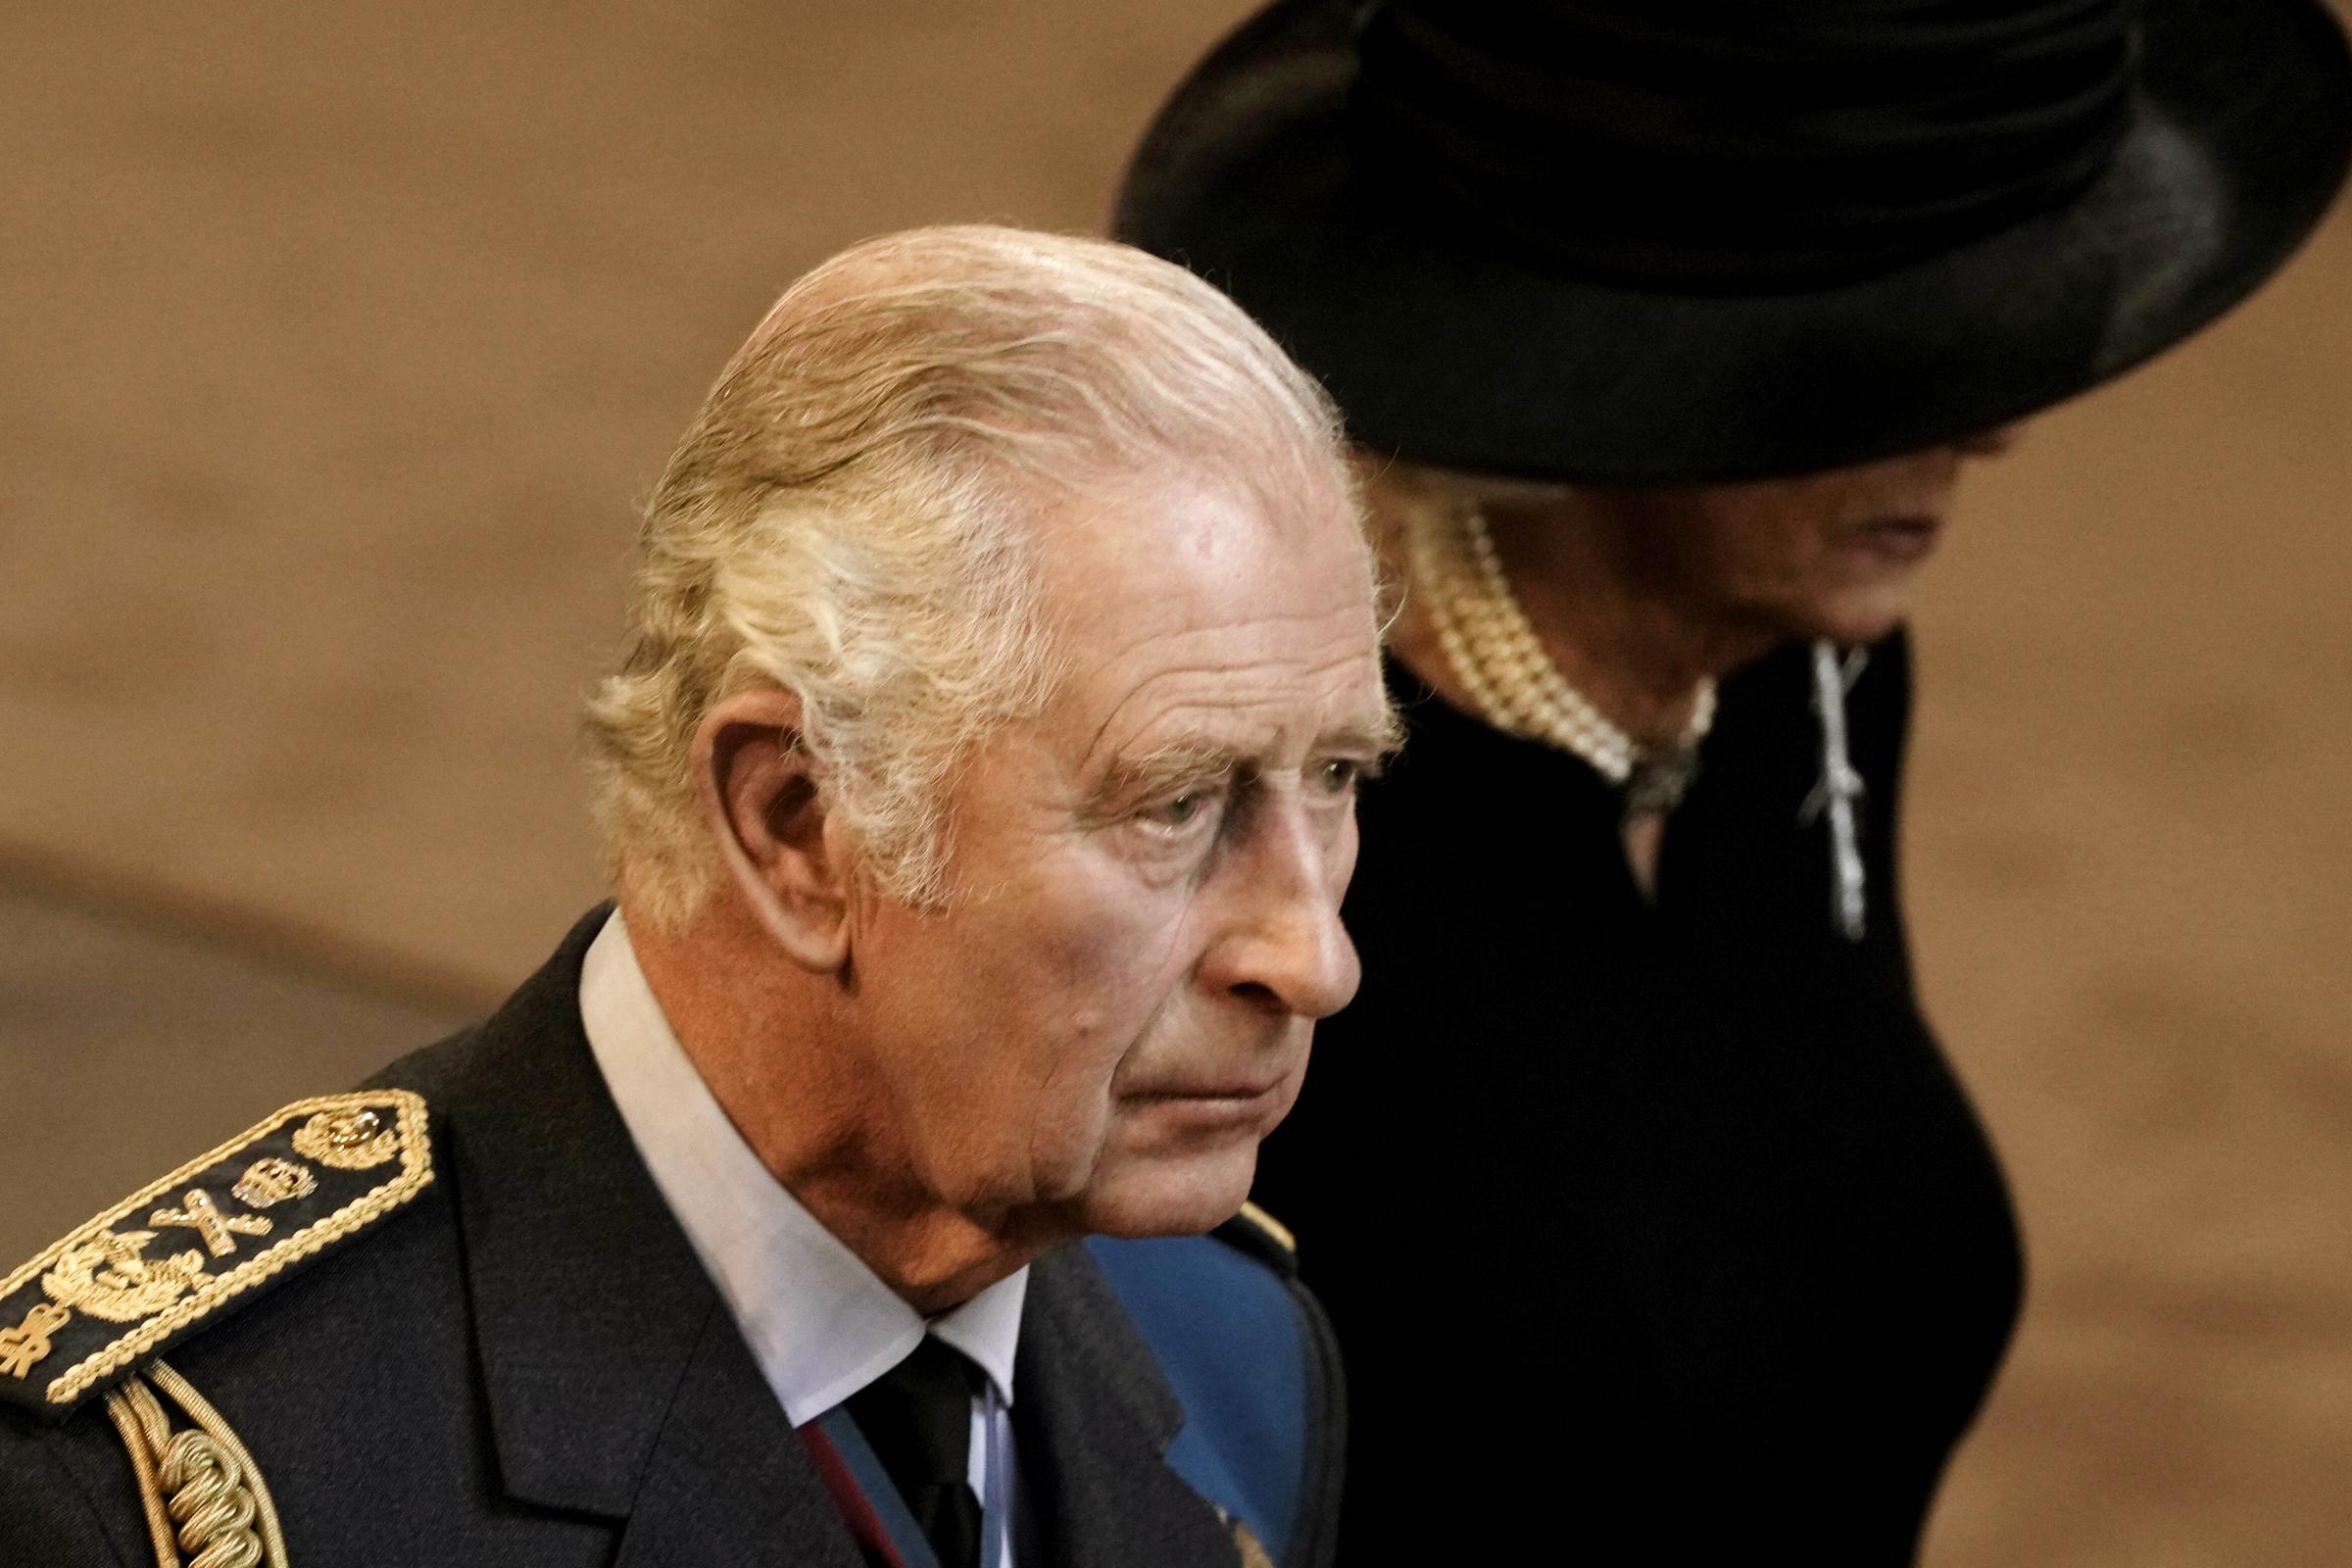 The Queen's Funeral - 